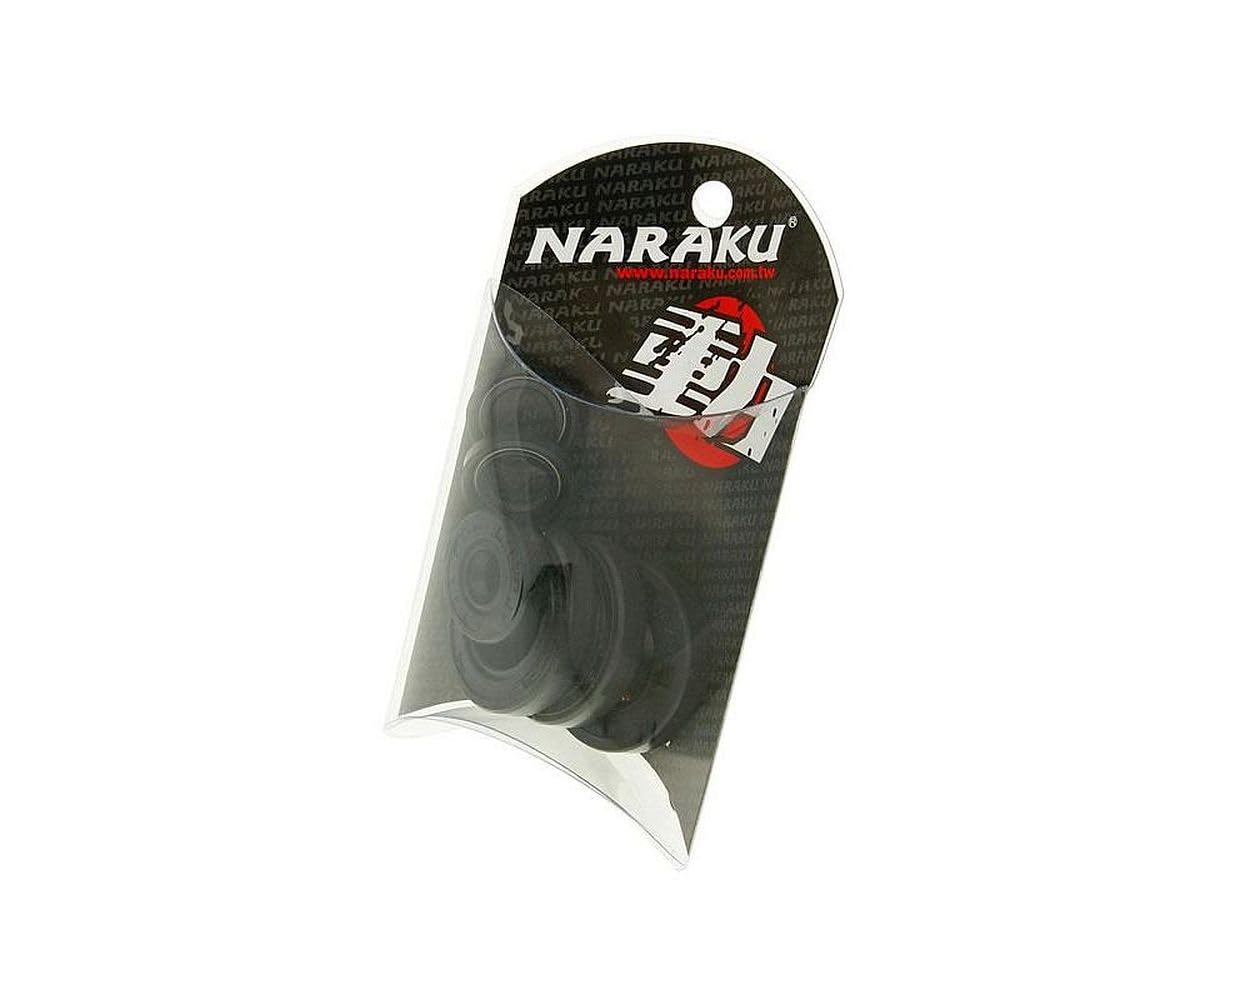 Wellendichtringsatz Motor Naraku für Derbi EBE, EBS von NARAKU